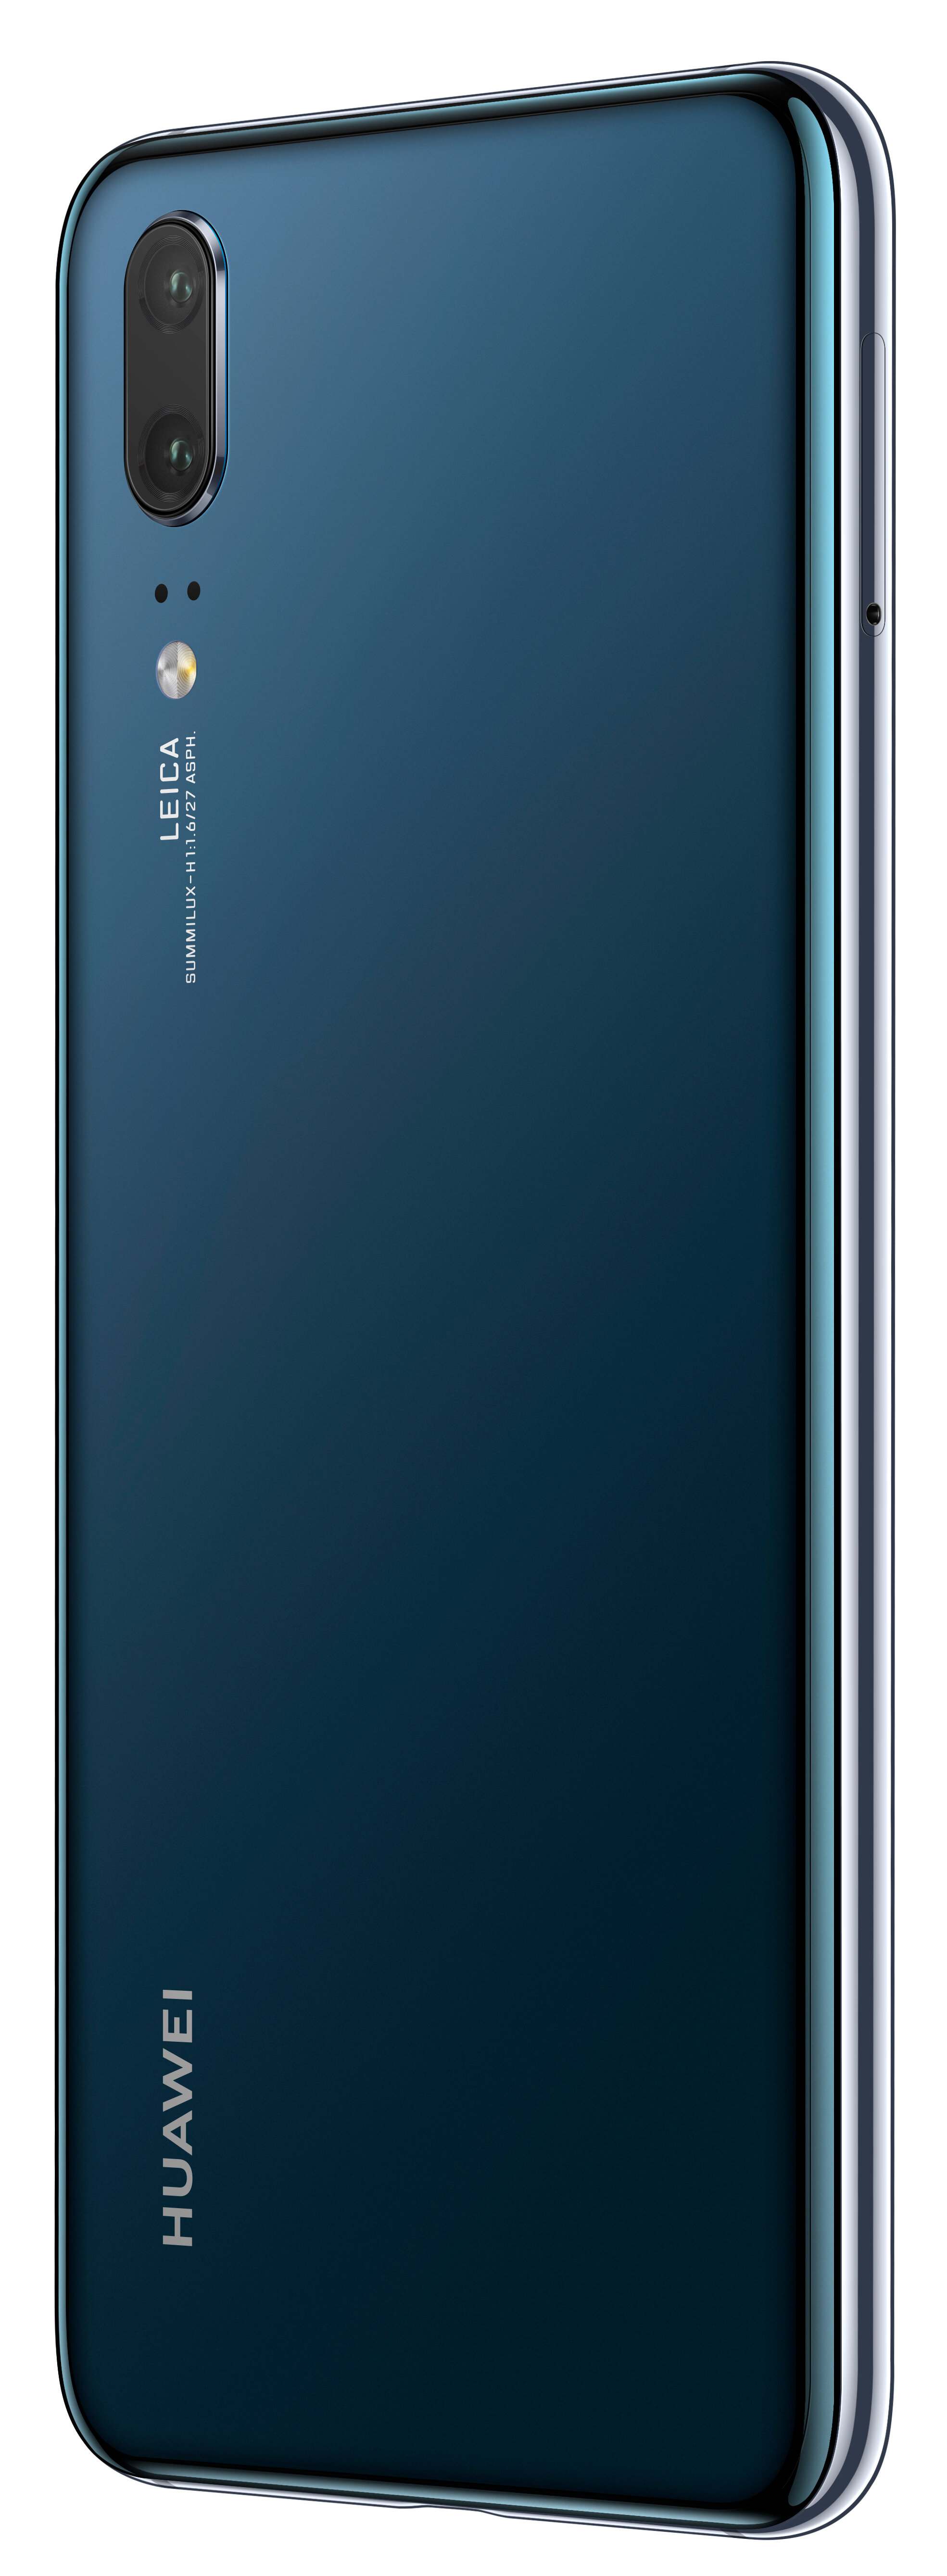 HUAWEI P20 4/128GB 5.8" Niebieski 51092EKD Smartfon - niskie ceny i opinie  w Media Expert